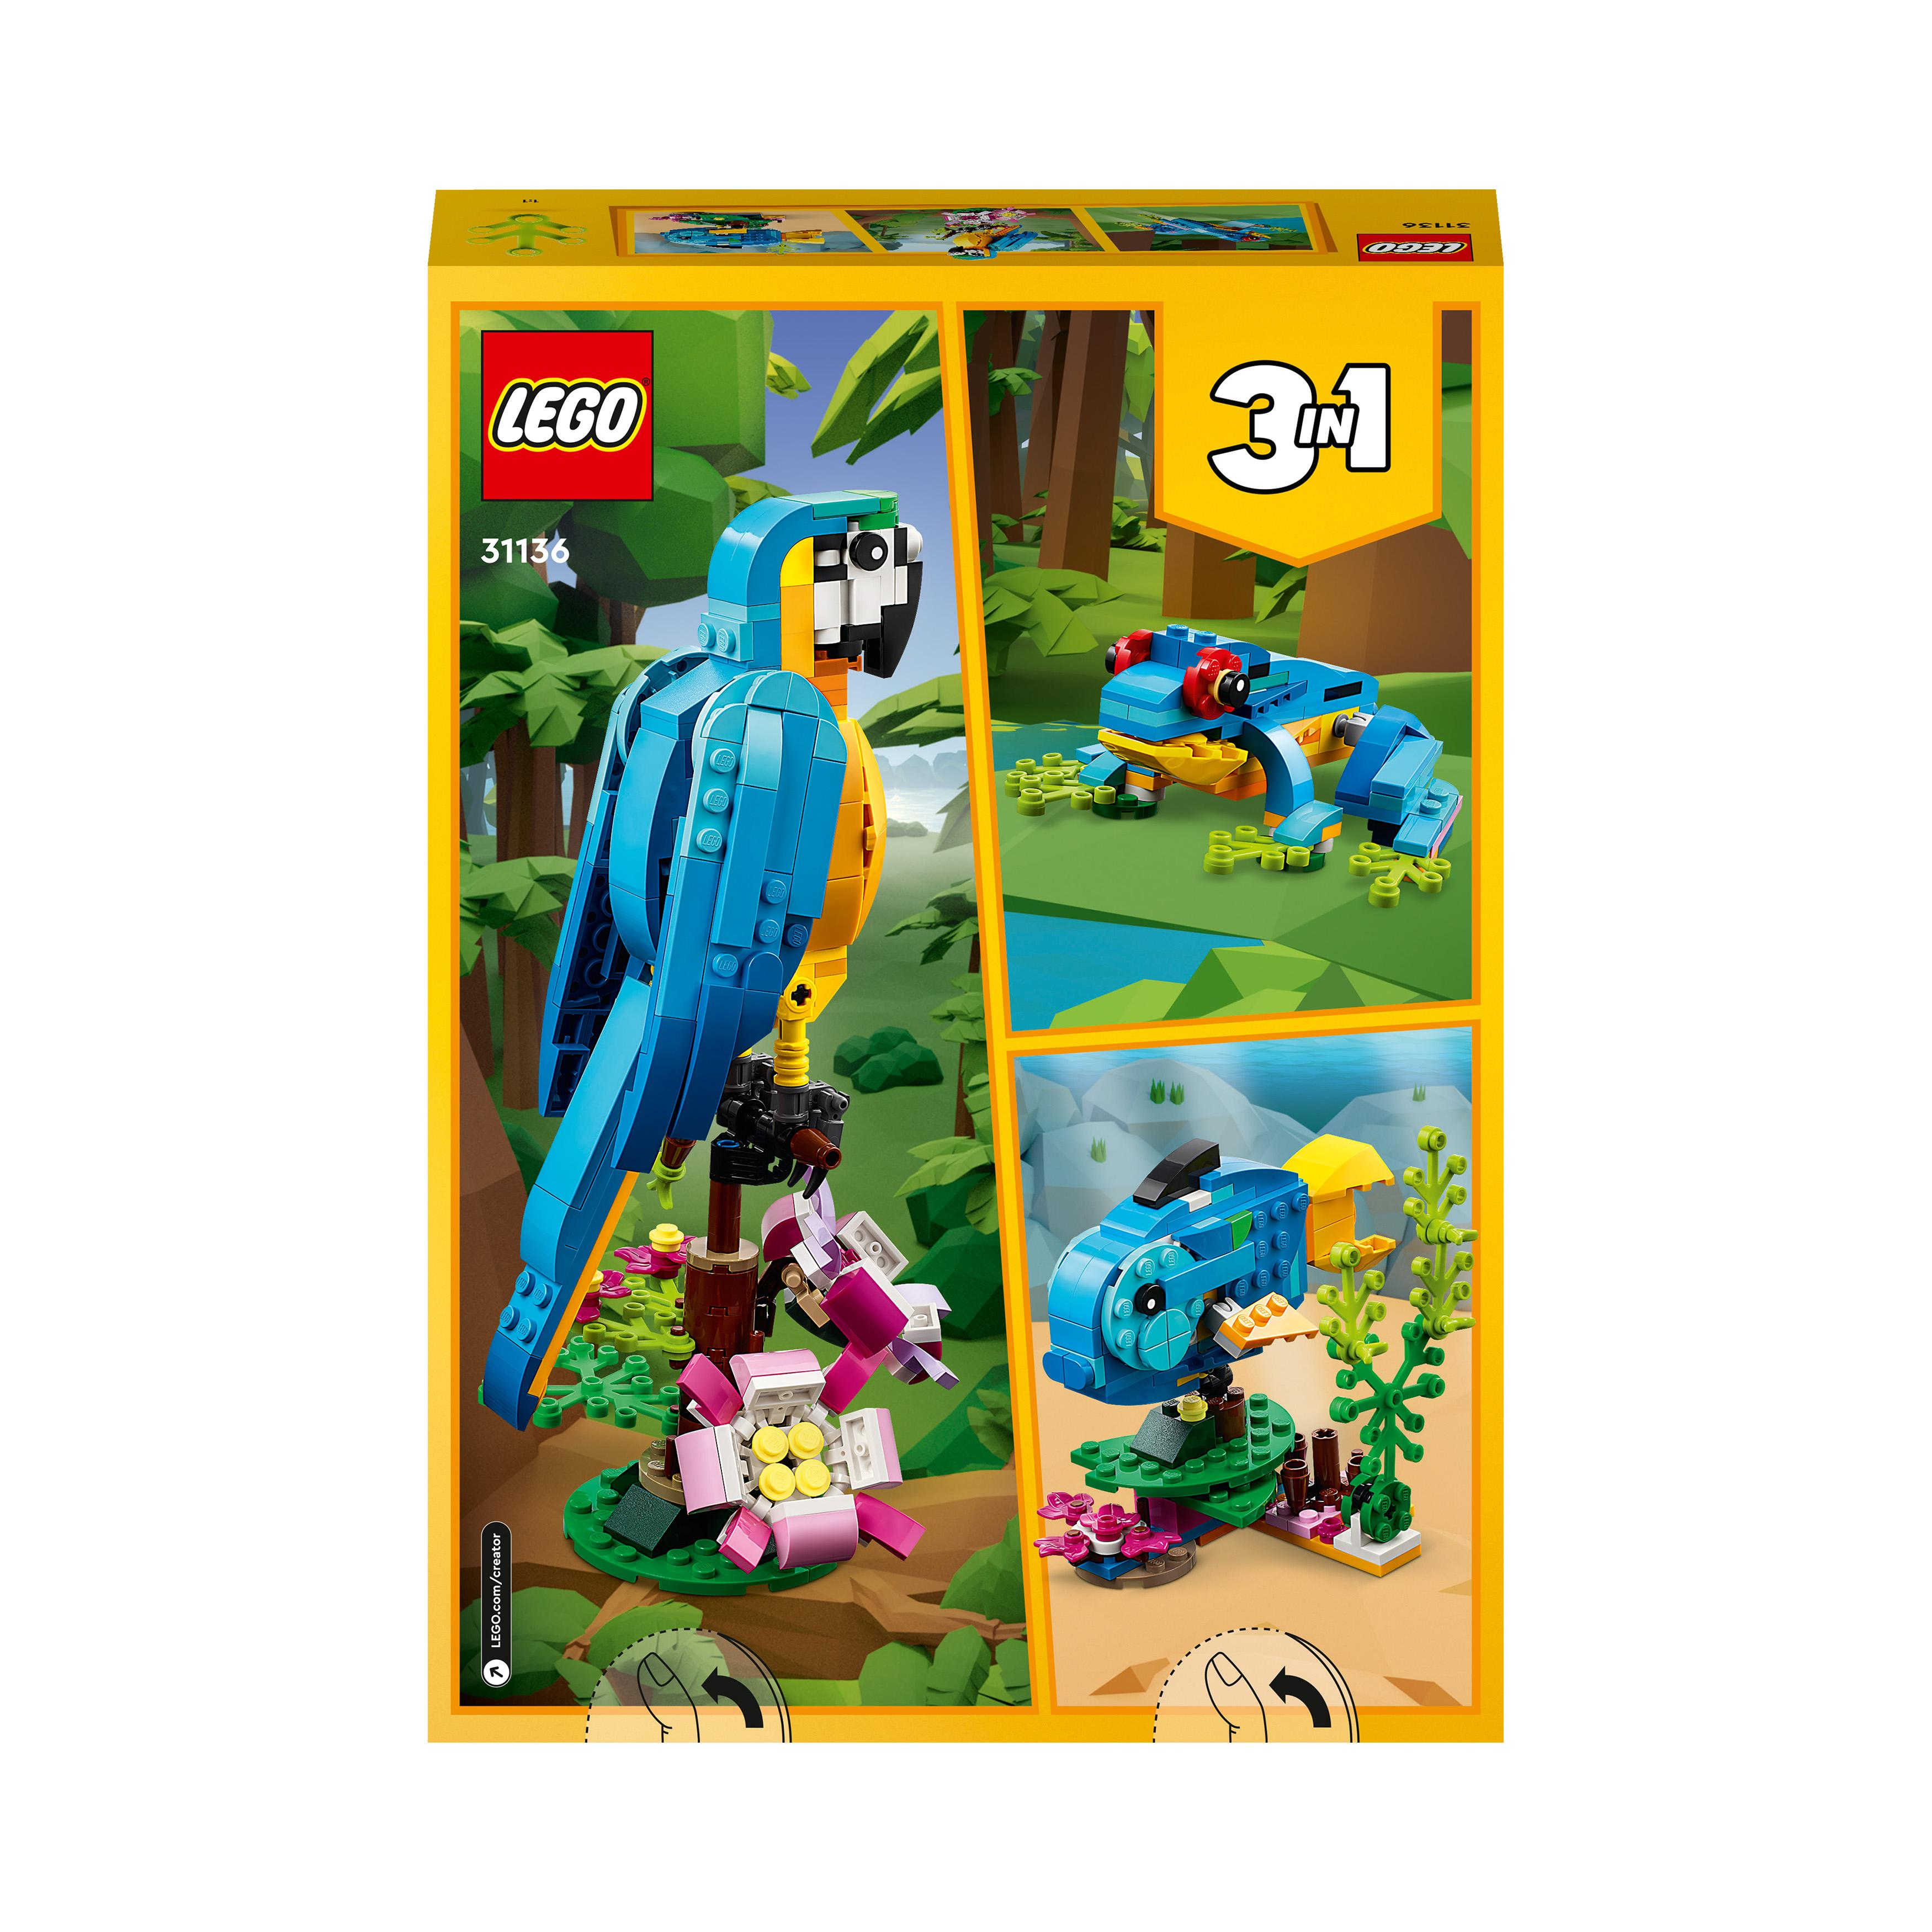 31136 LEGO Creator Mehrfarbig Bausatz, Papagei Exotischer